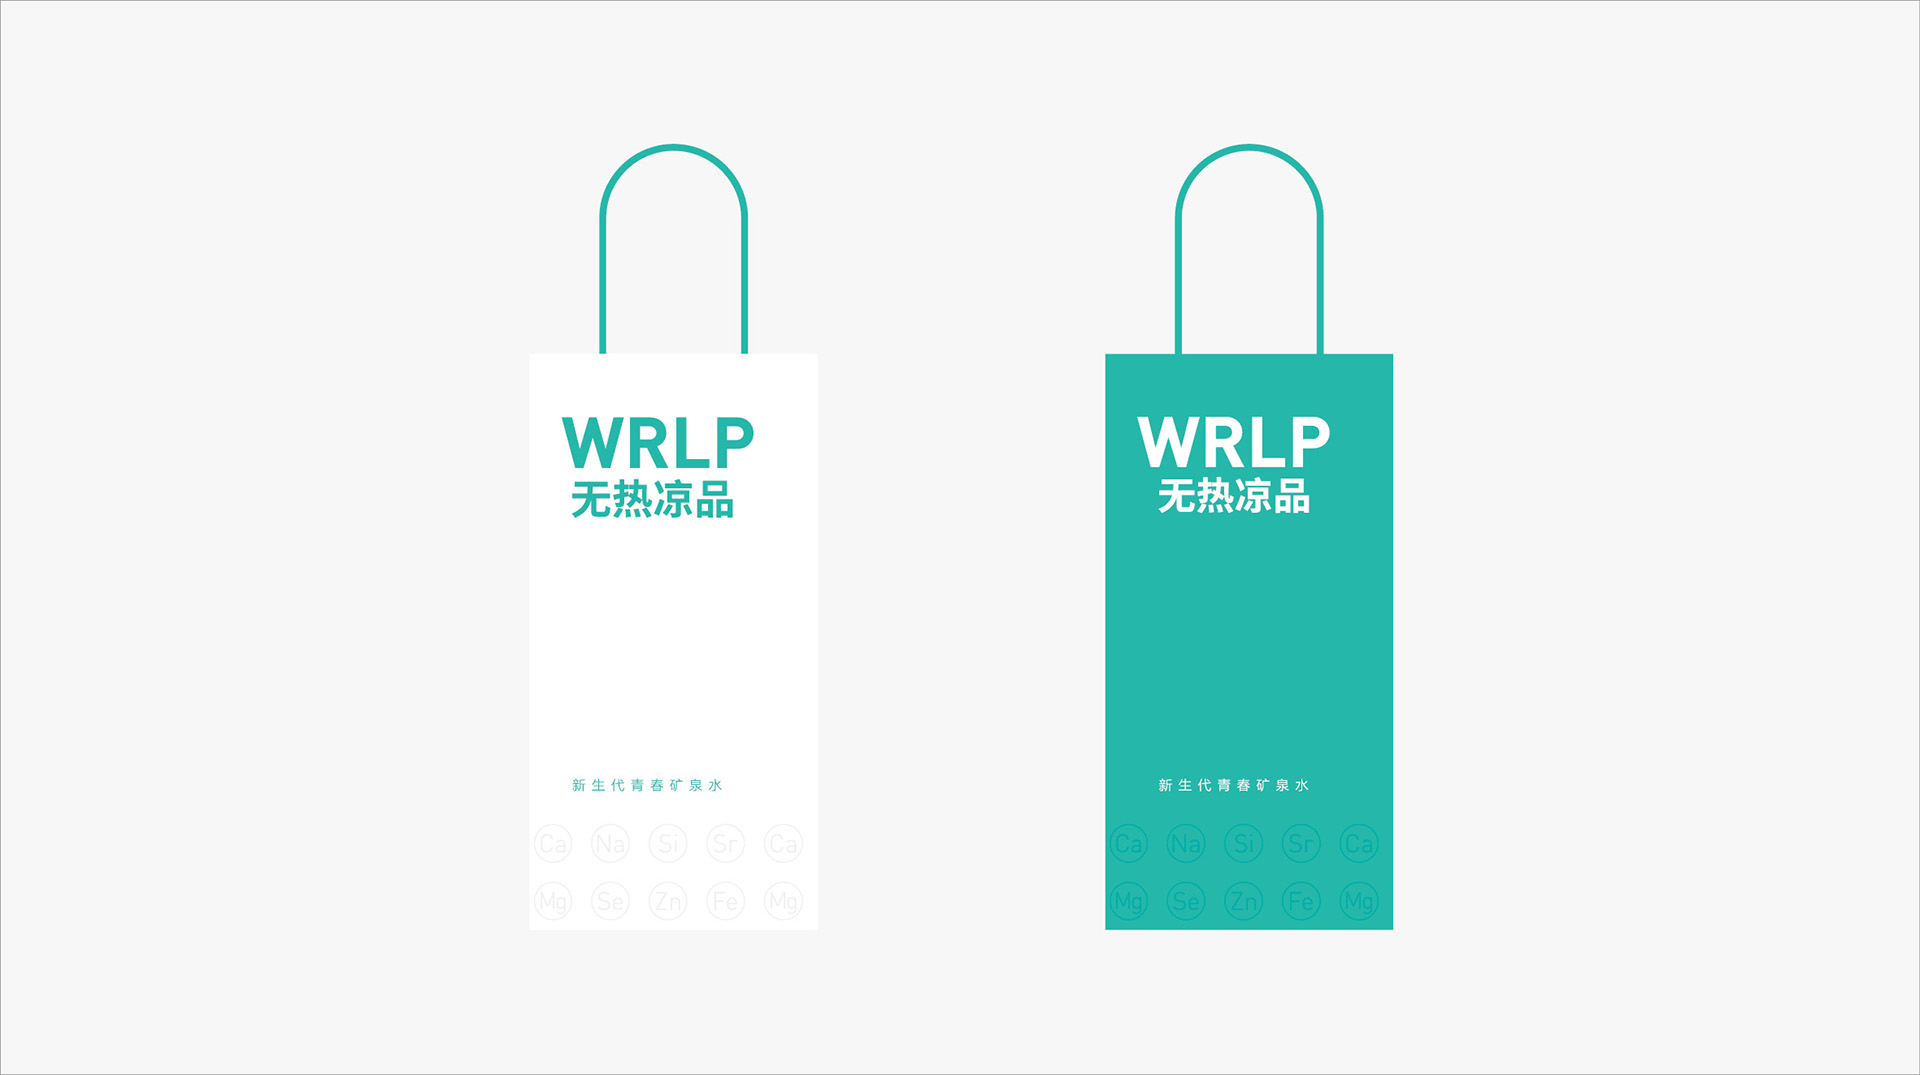 无热凉品(WRLP)产品品牌策略设计案例